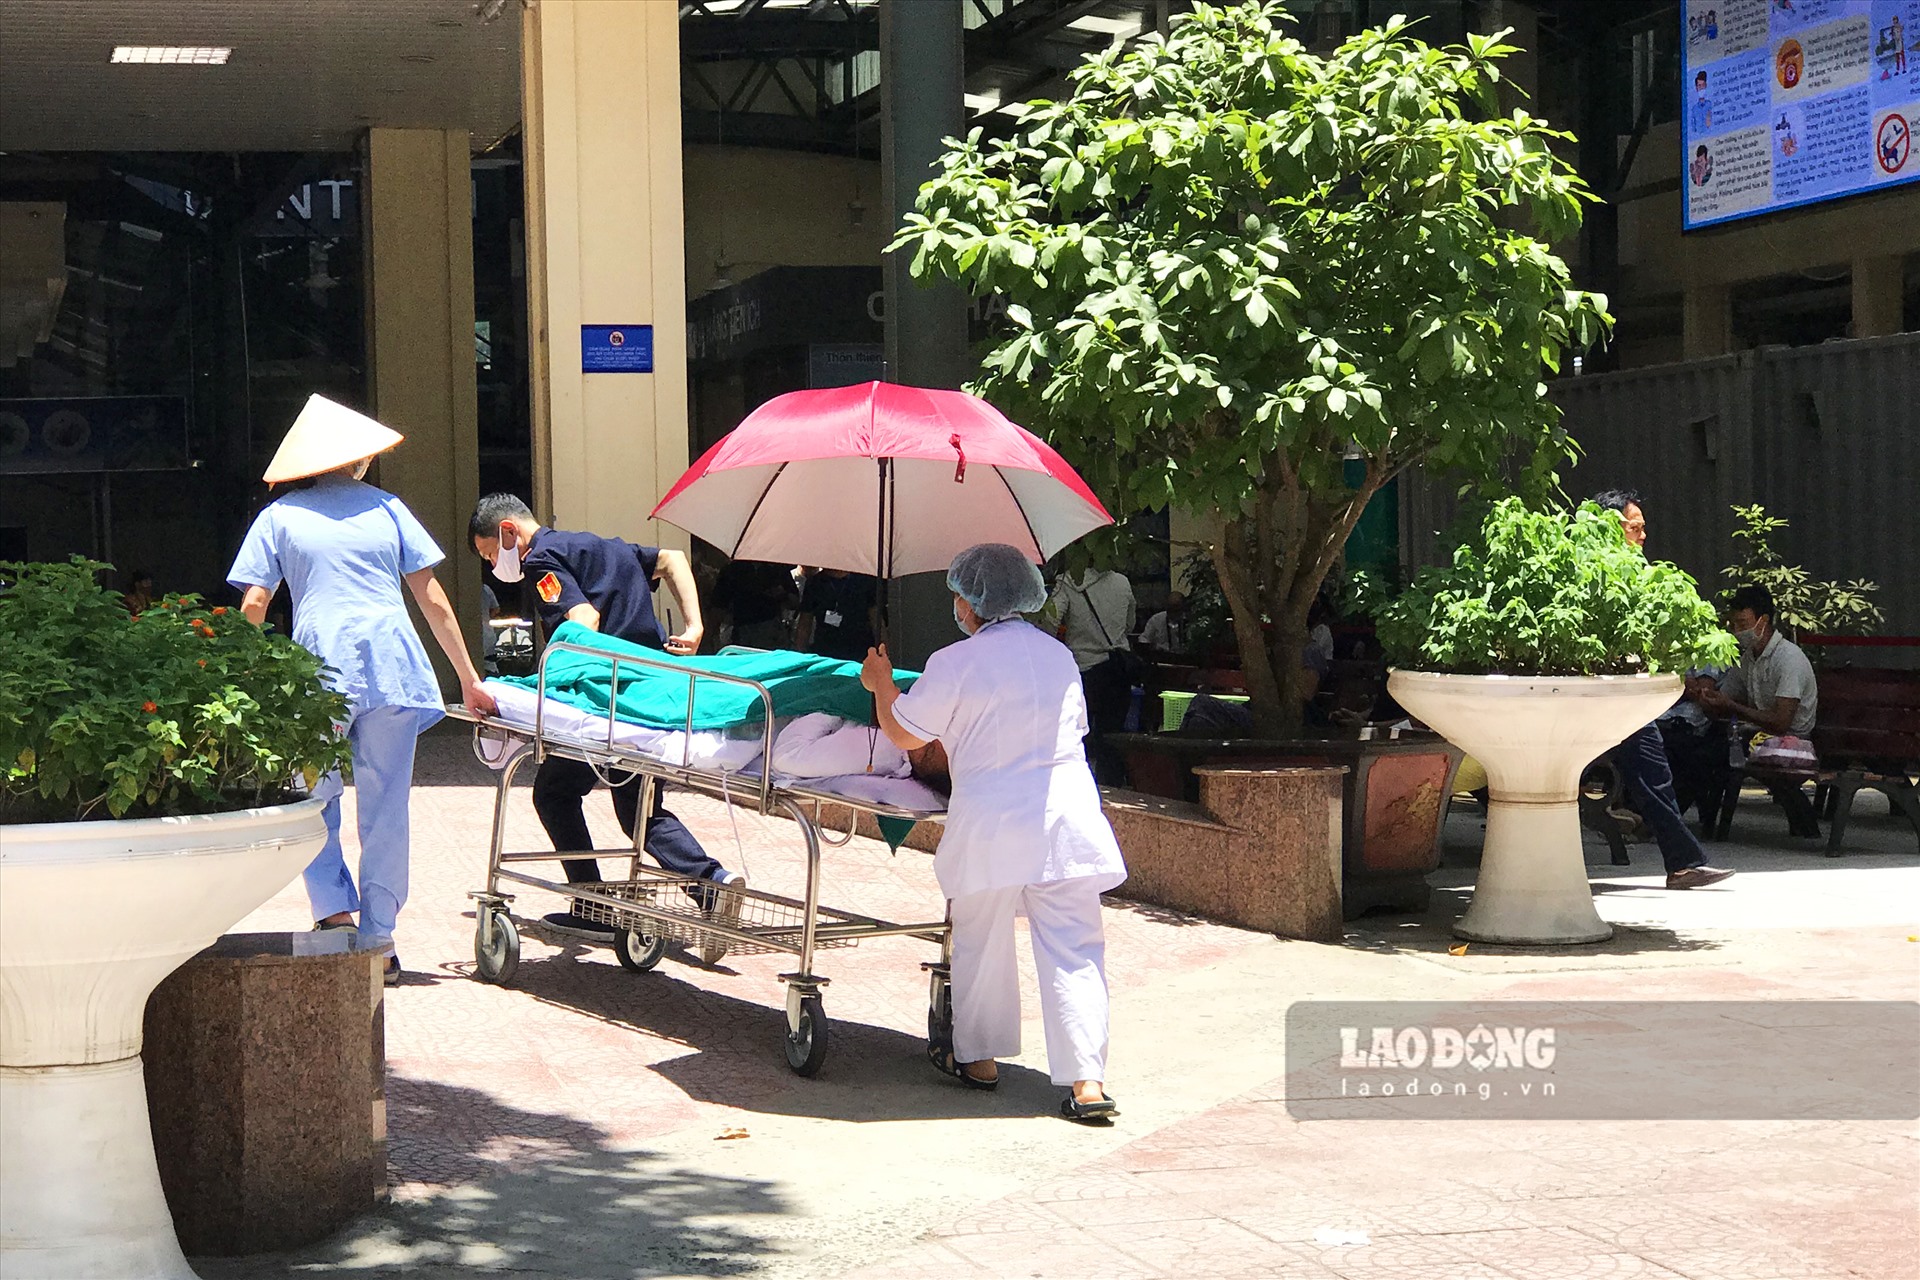 Khi vận chuyển bệnh nhân, các nhân viên y tế dùng ô để che nắng, chắn cái nóng như rang cho bệnh nhân.